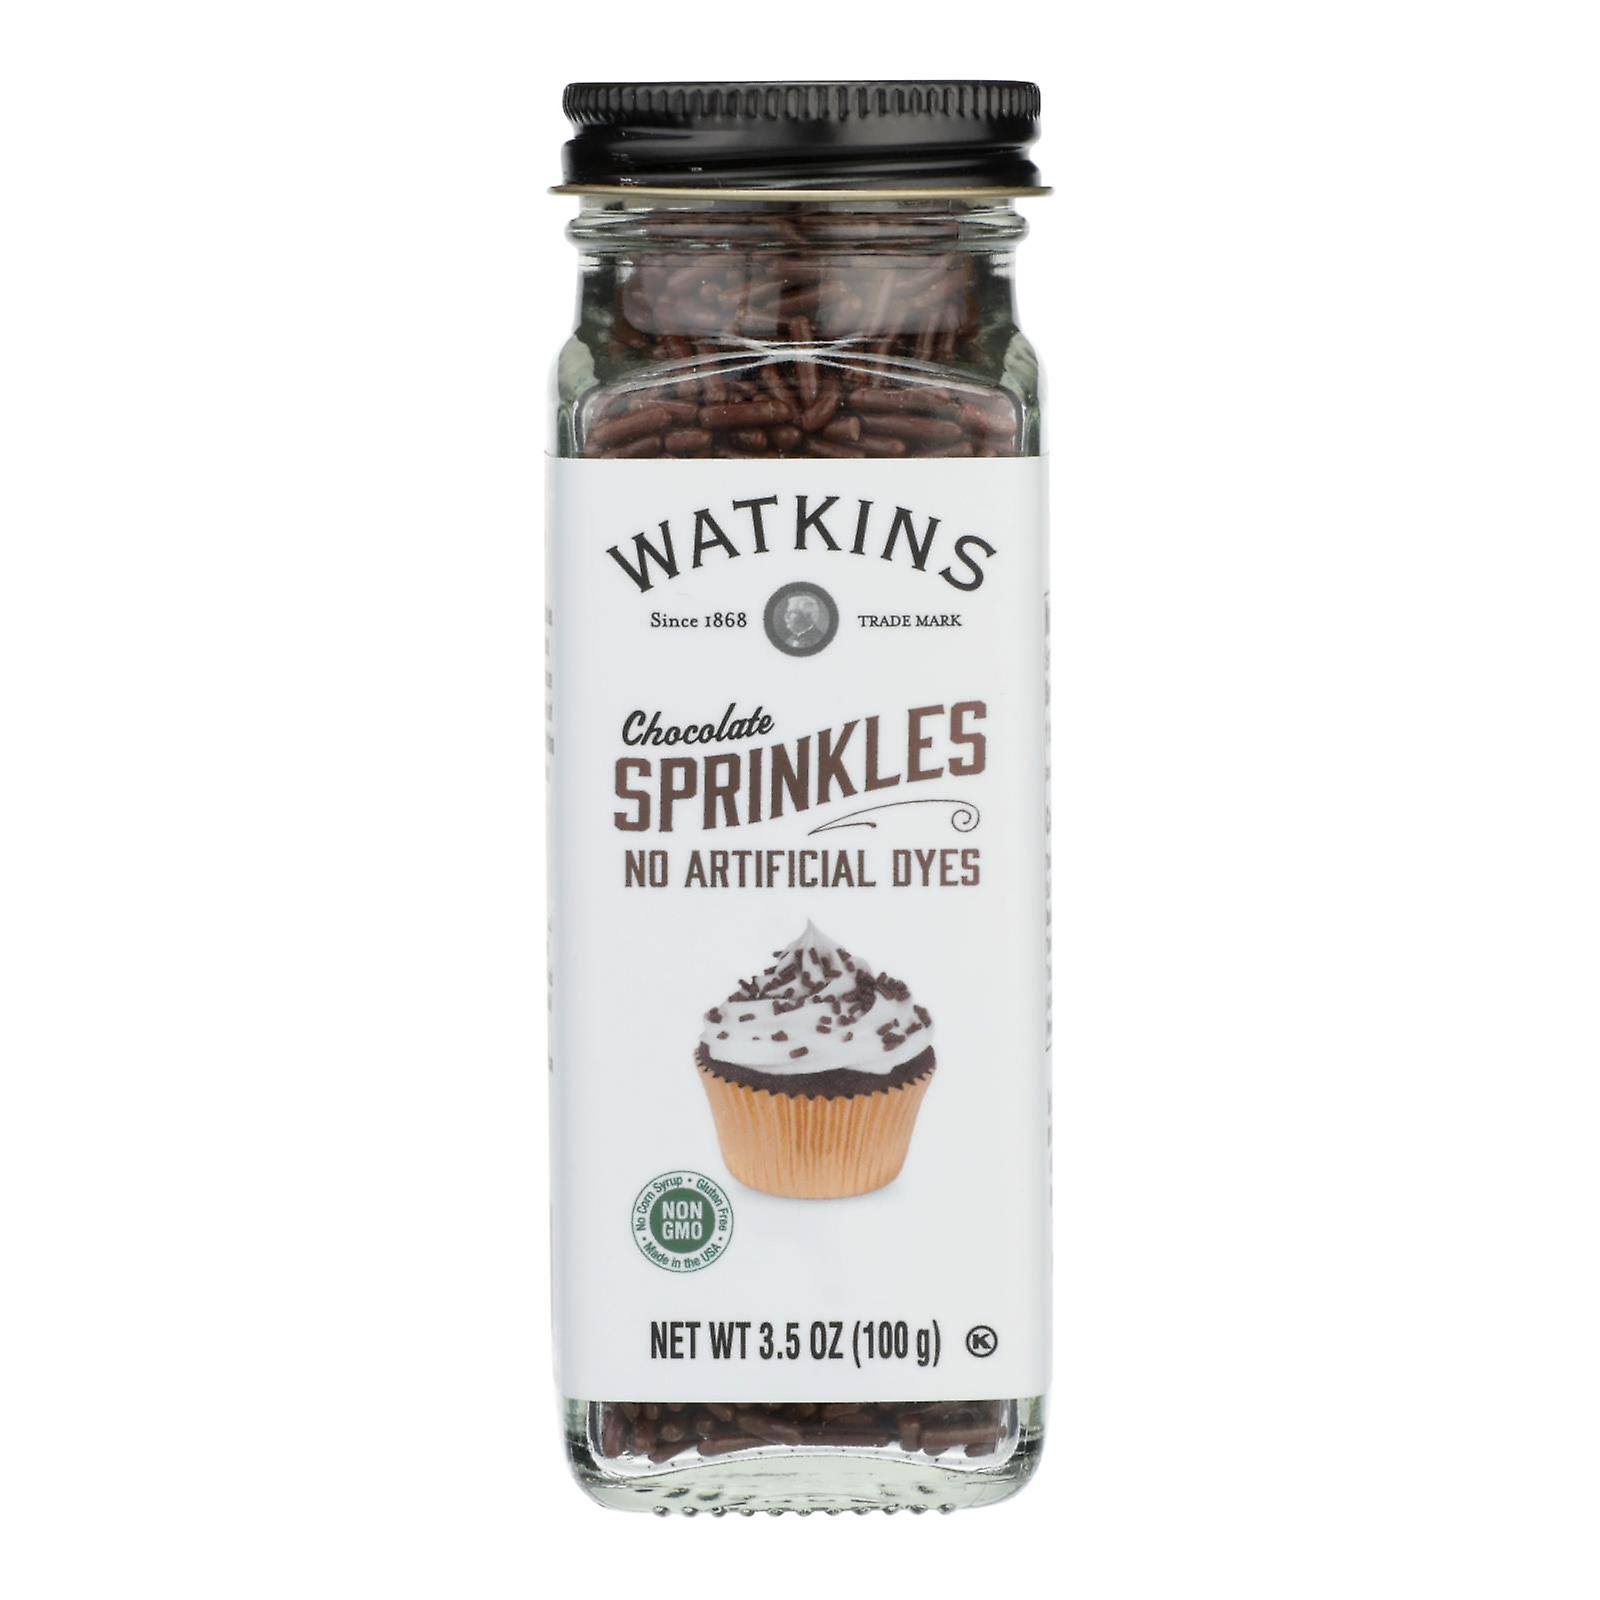 Watkins - Decorating Sprinkle Chocolate - Pack of 4 - 3/3.5 oz